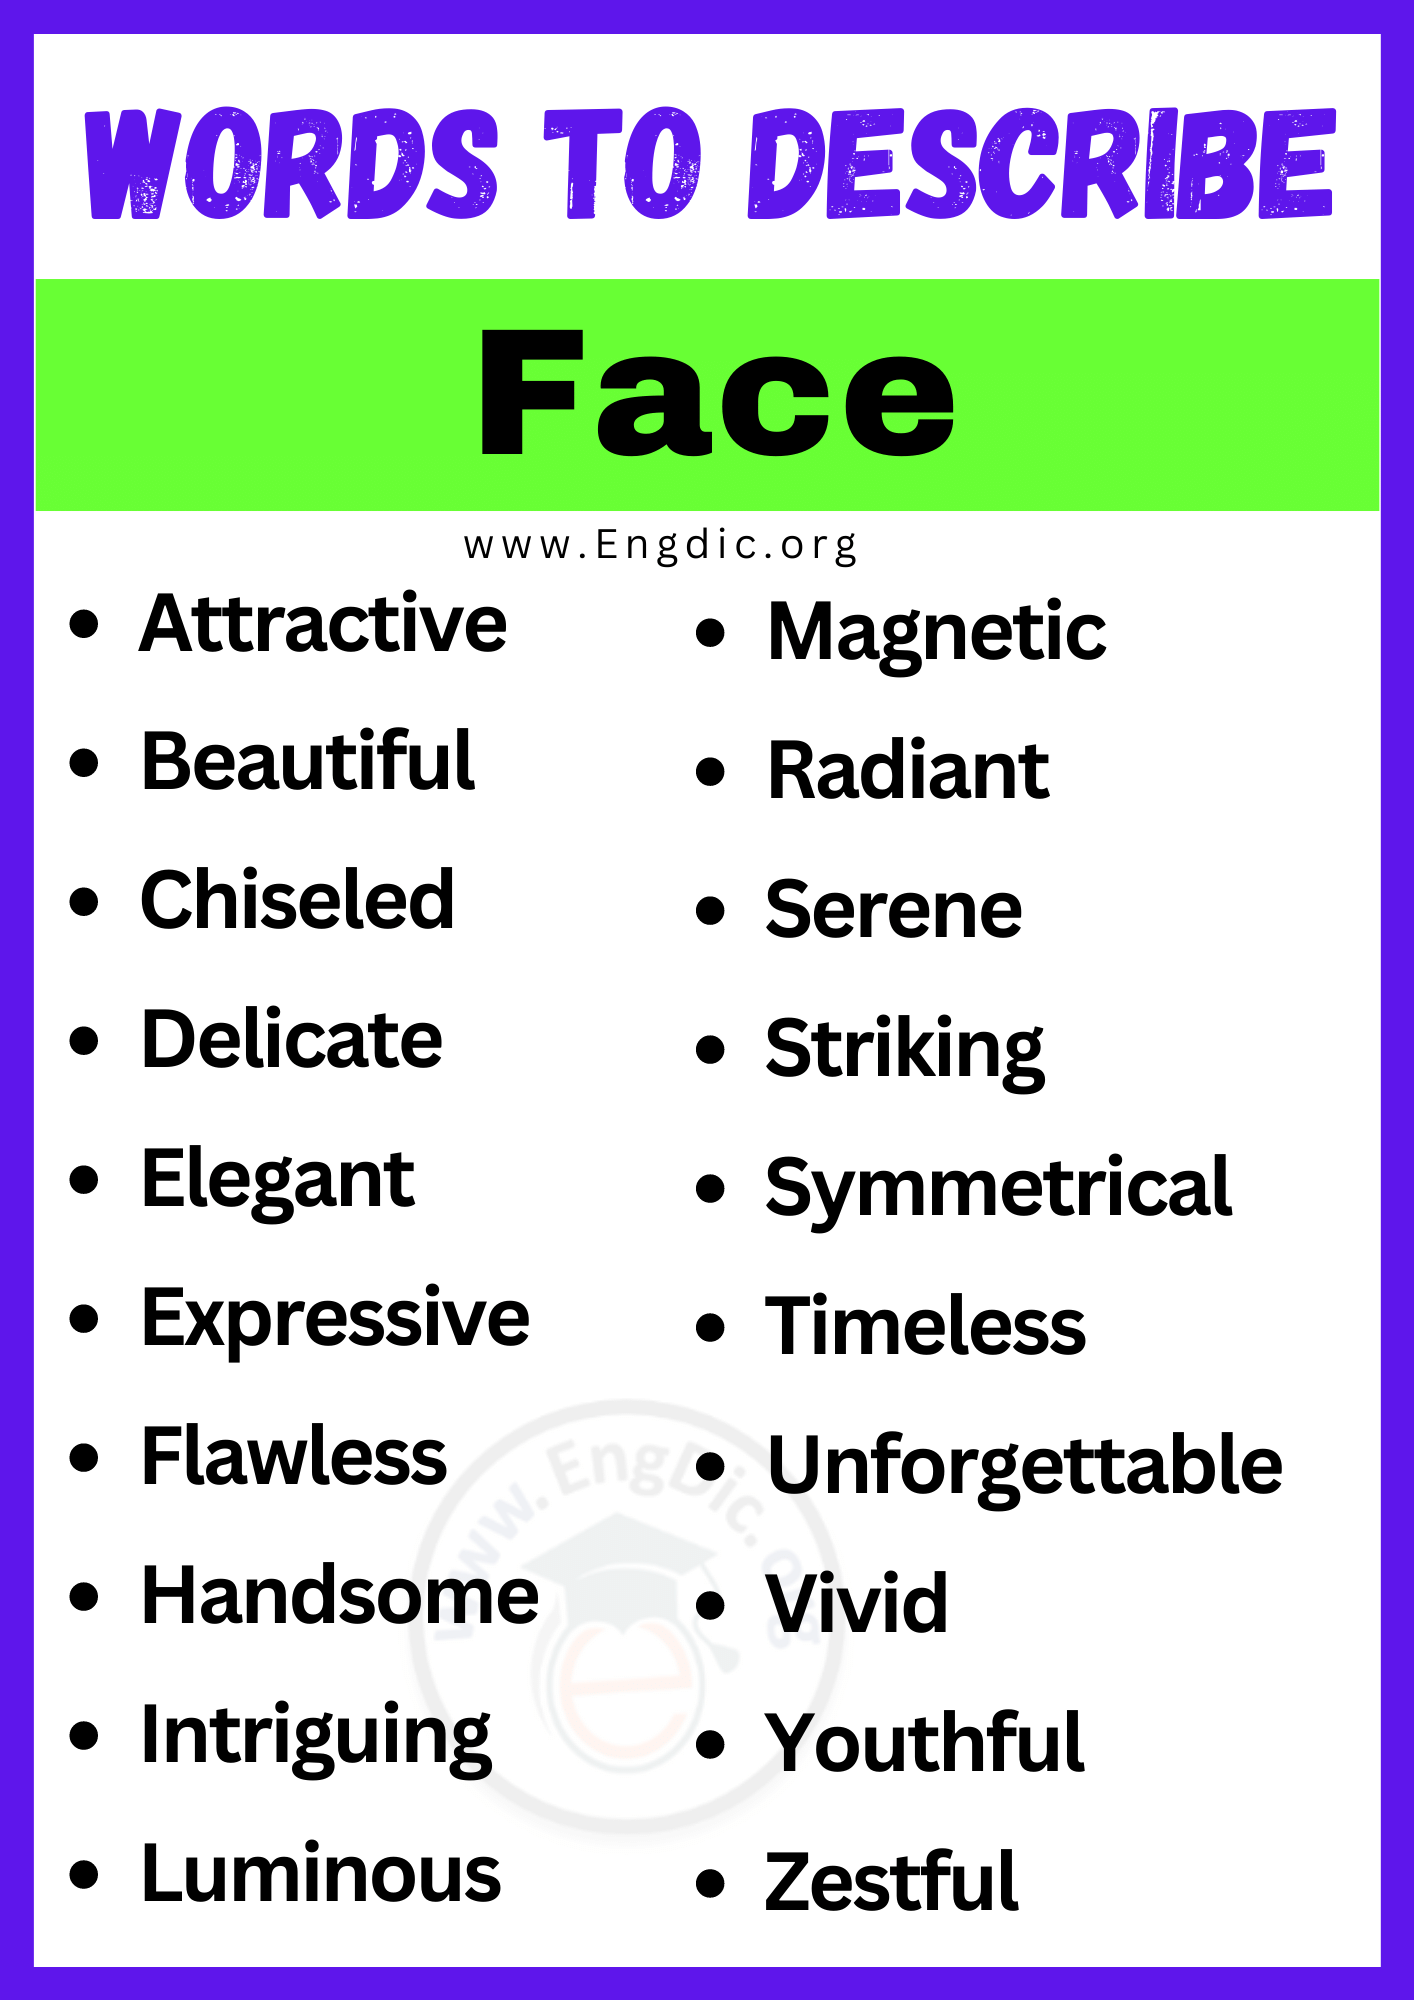 Words to Describe Face